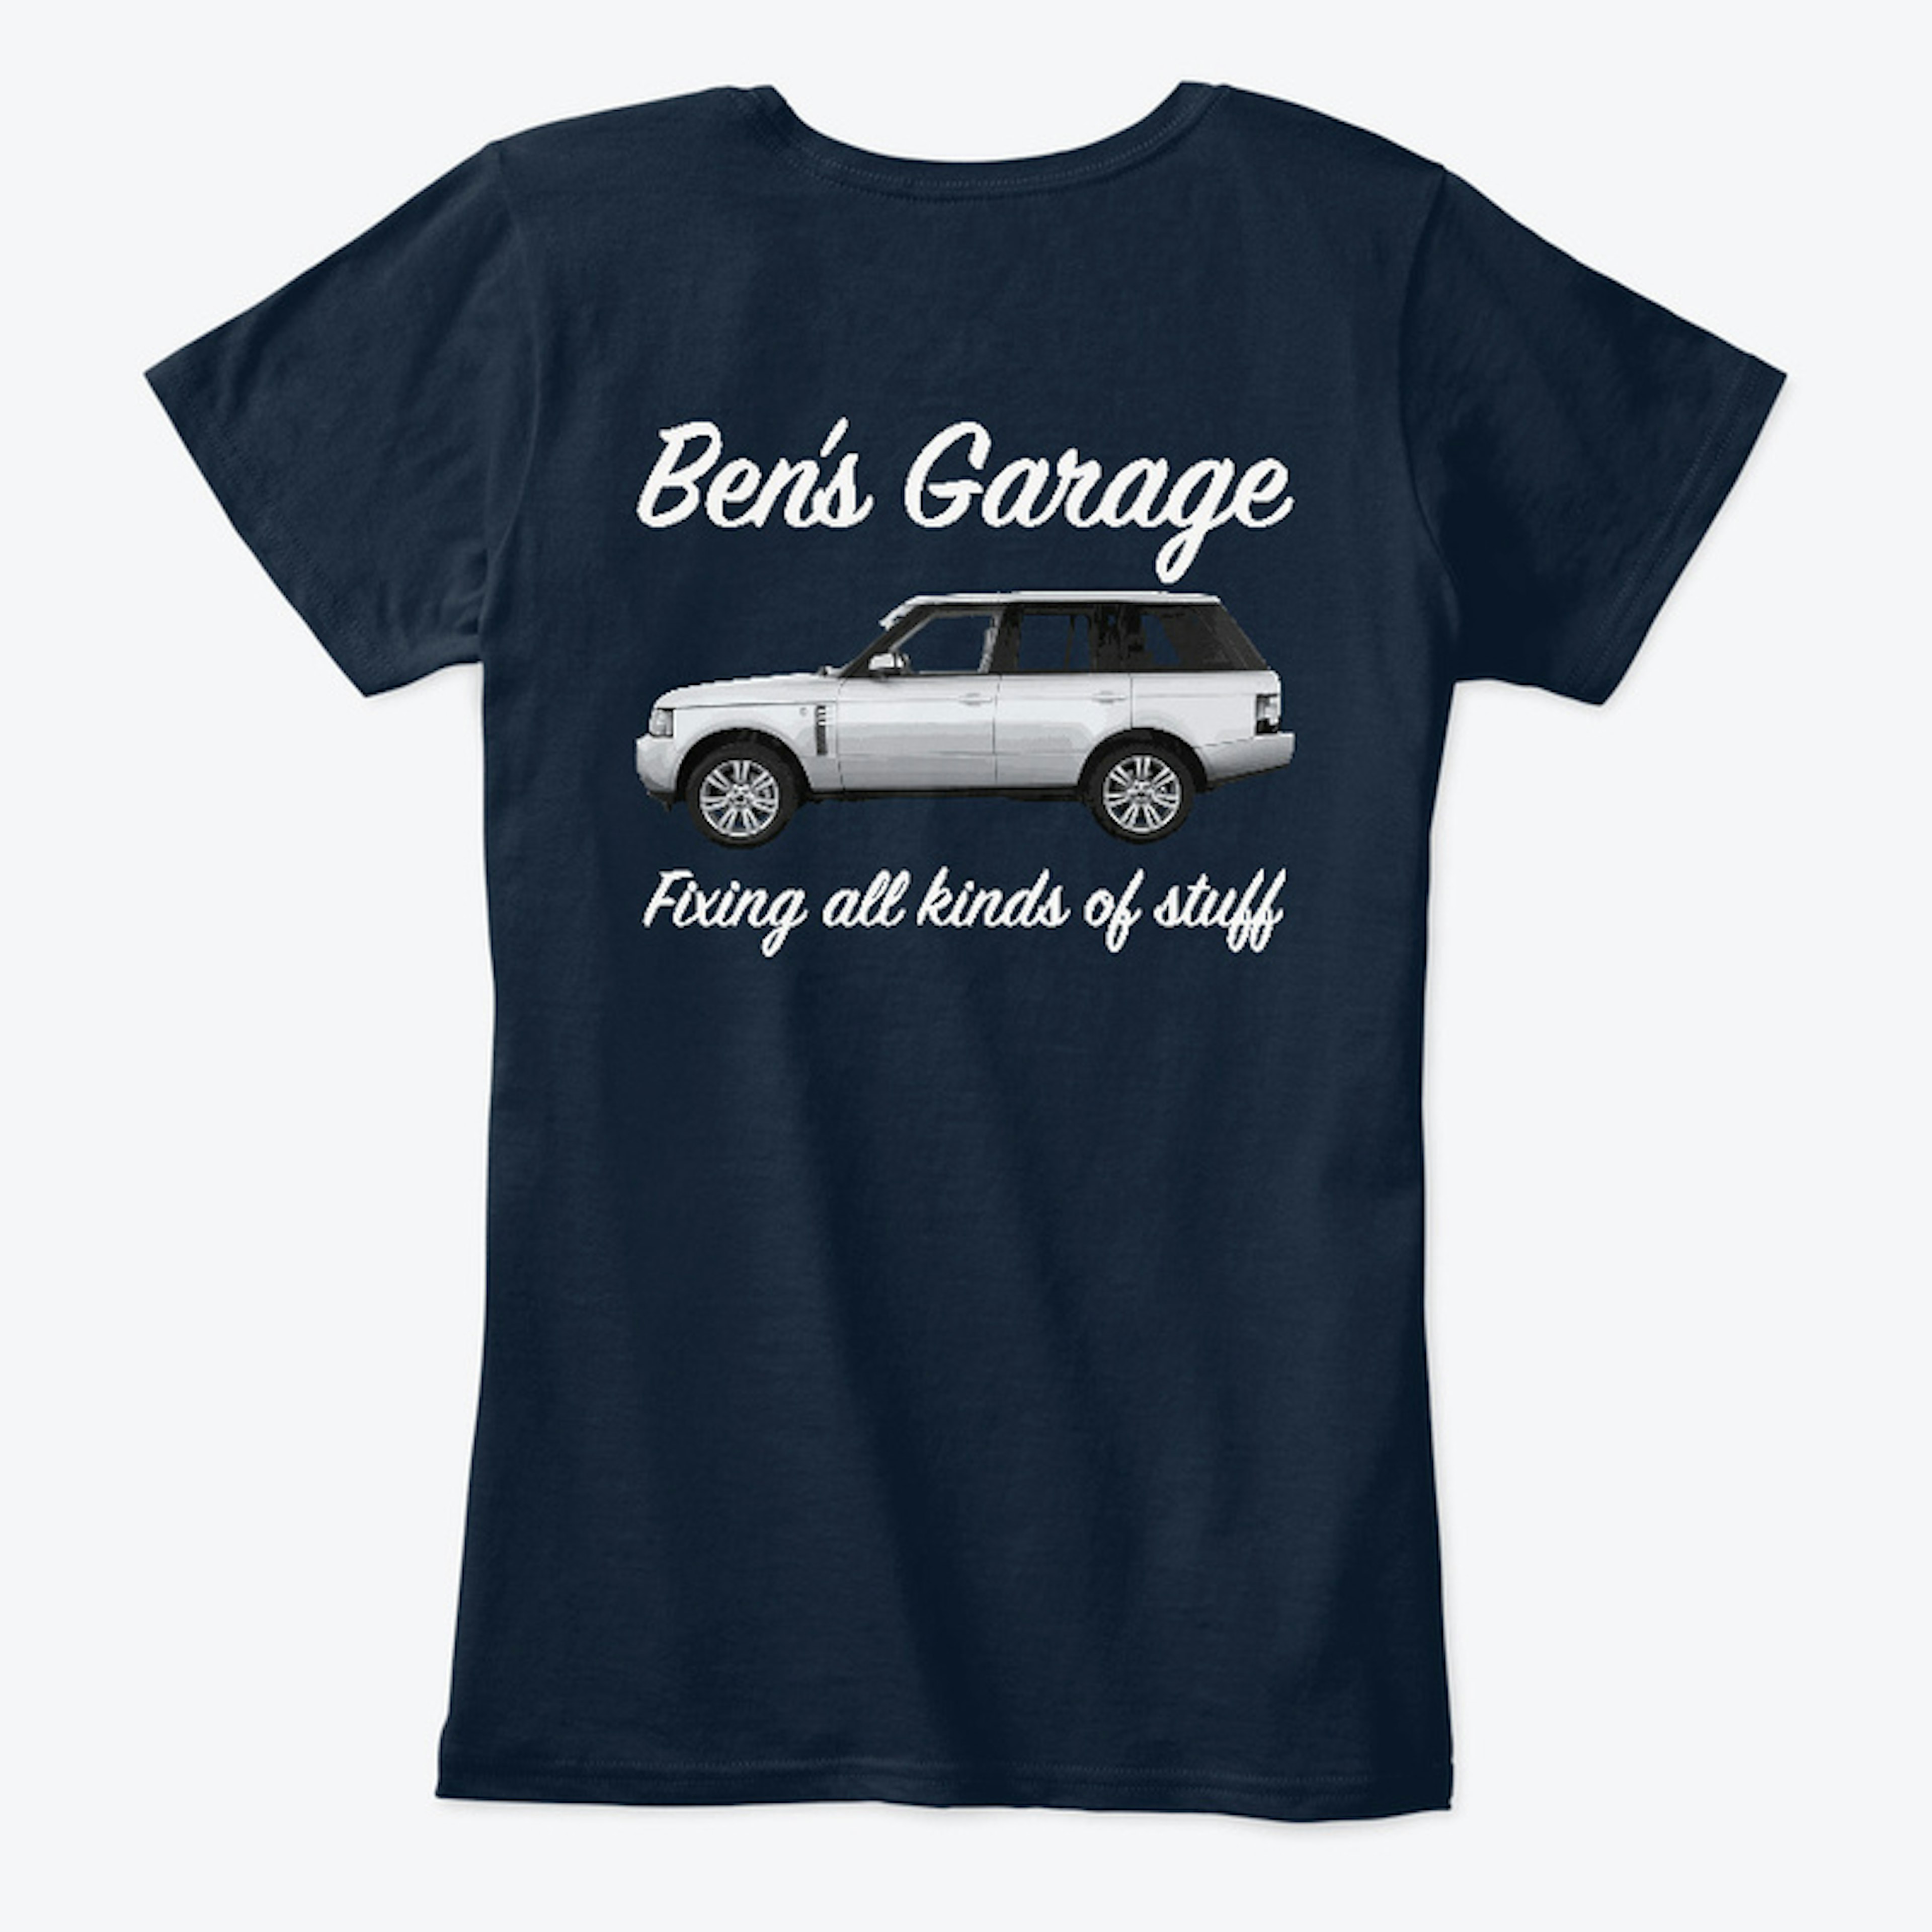 Ben's Garage Range Rover T shirt.